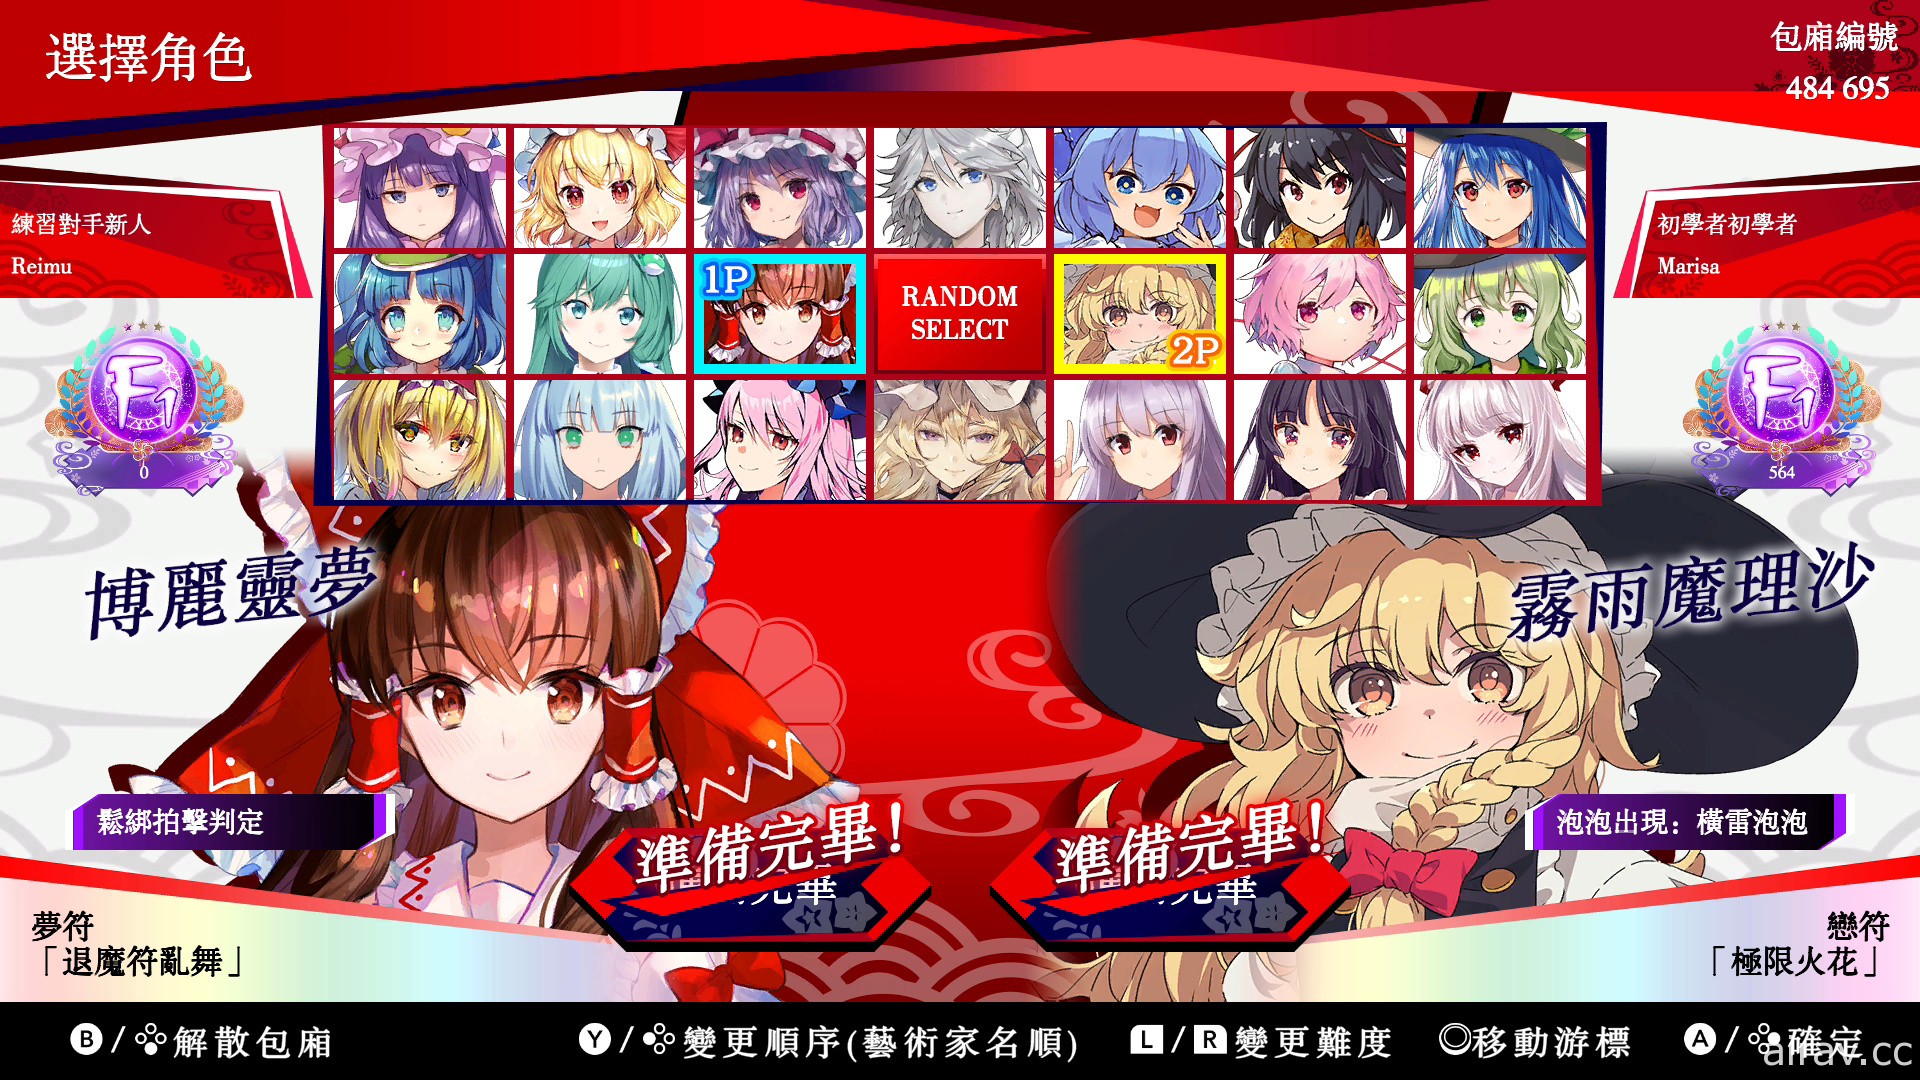 节奏益智游戏《东方咒术泡泡》中文版今天起开放线上对战 将举办特别直播